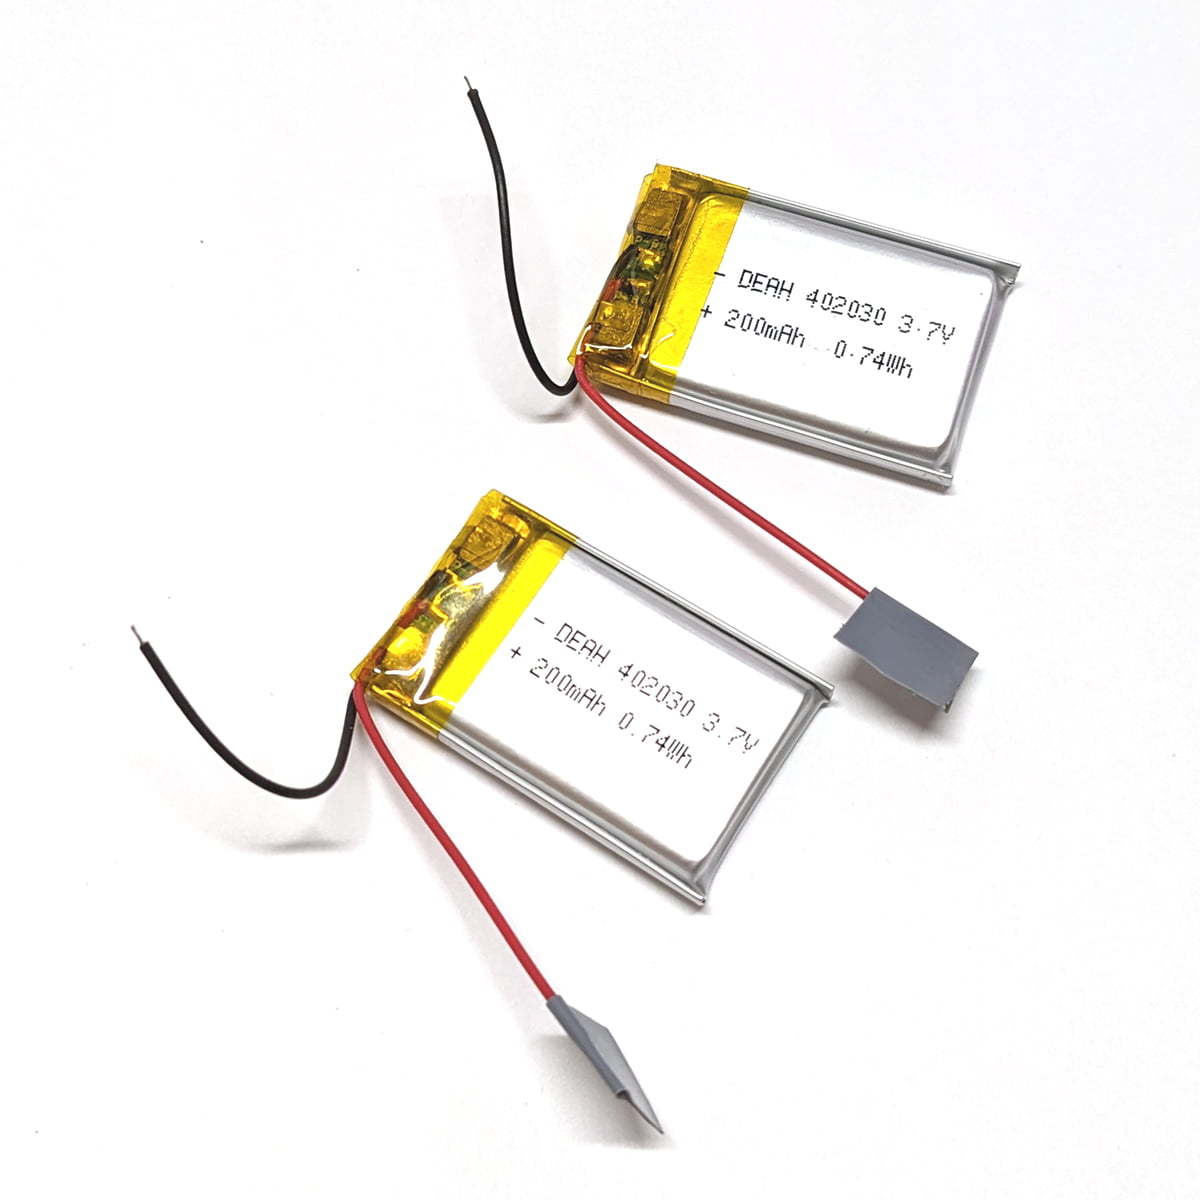 リポ バッテリー 402030 200mah 3.7v 充電式 リチウムポリマー 電池 2個_画像1